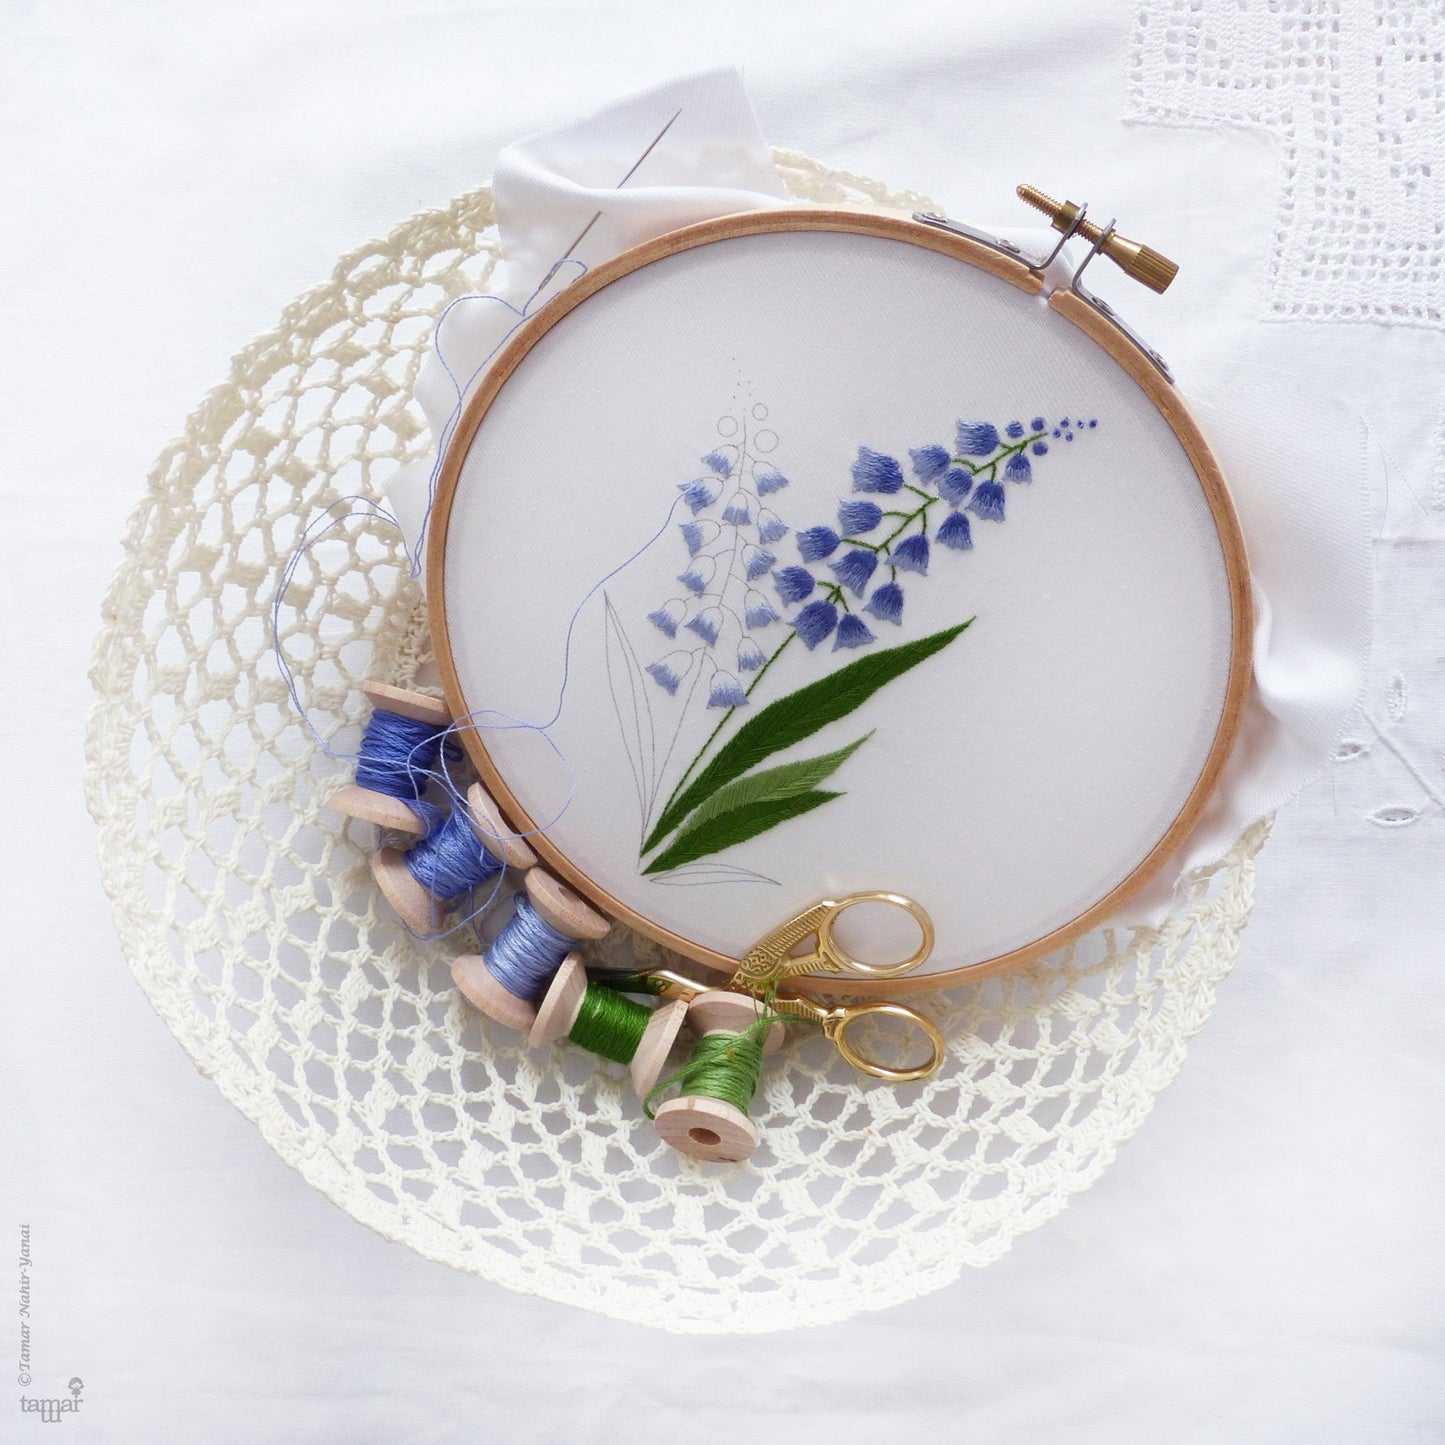 Bellevalia embroidery kit